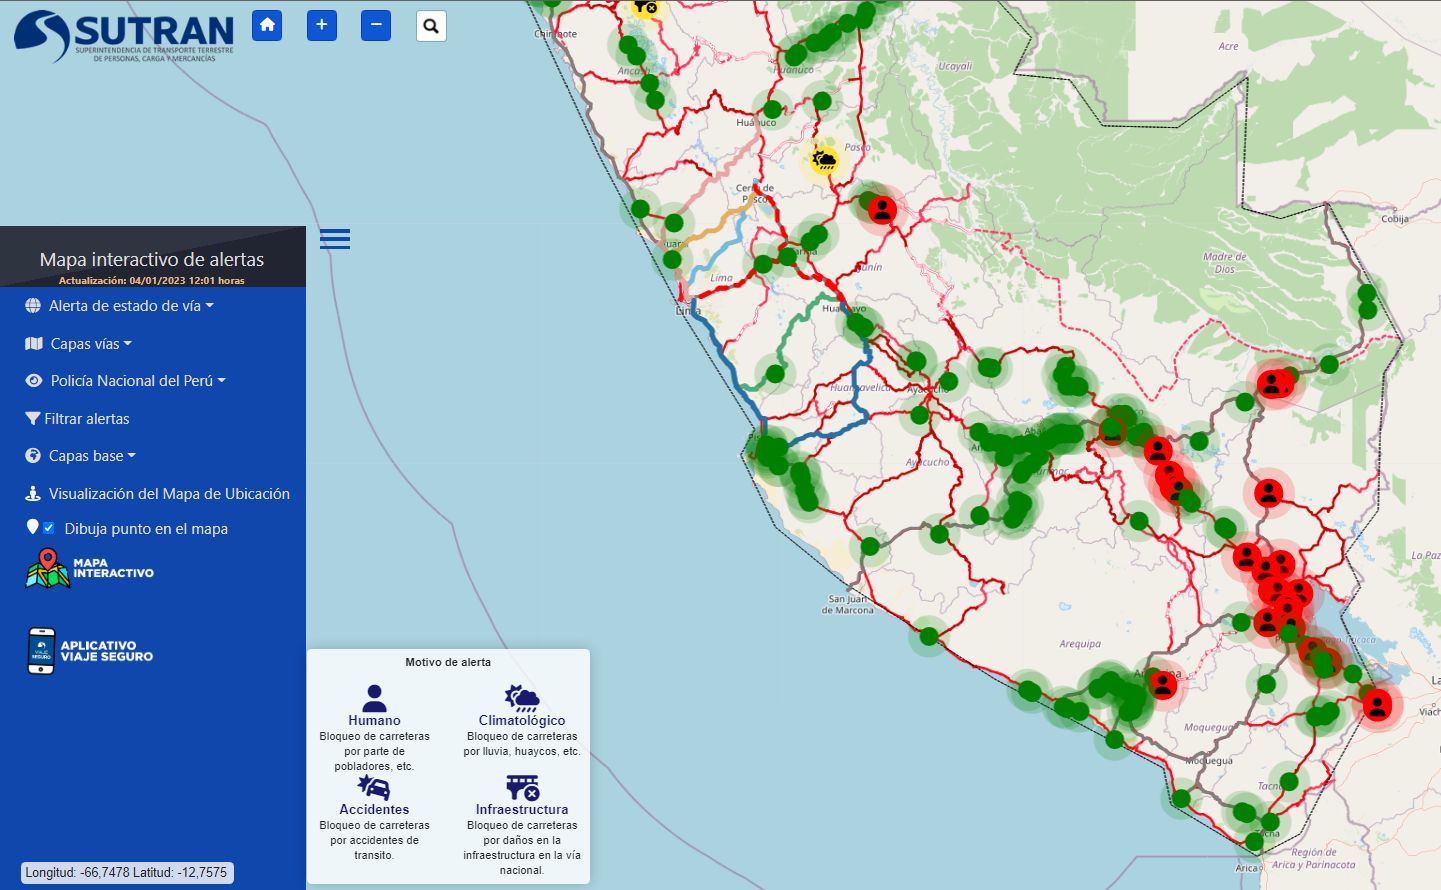 Carreteras y vías bloqueadas por paro nacional en Perú. Mayoría de restricciones están en las regiones del sur del Perú